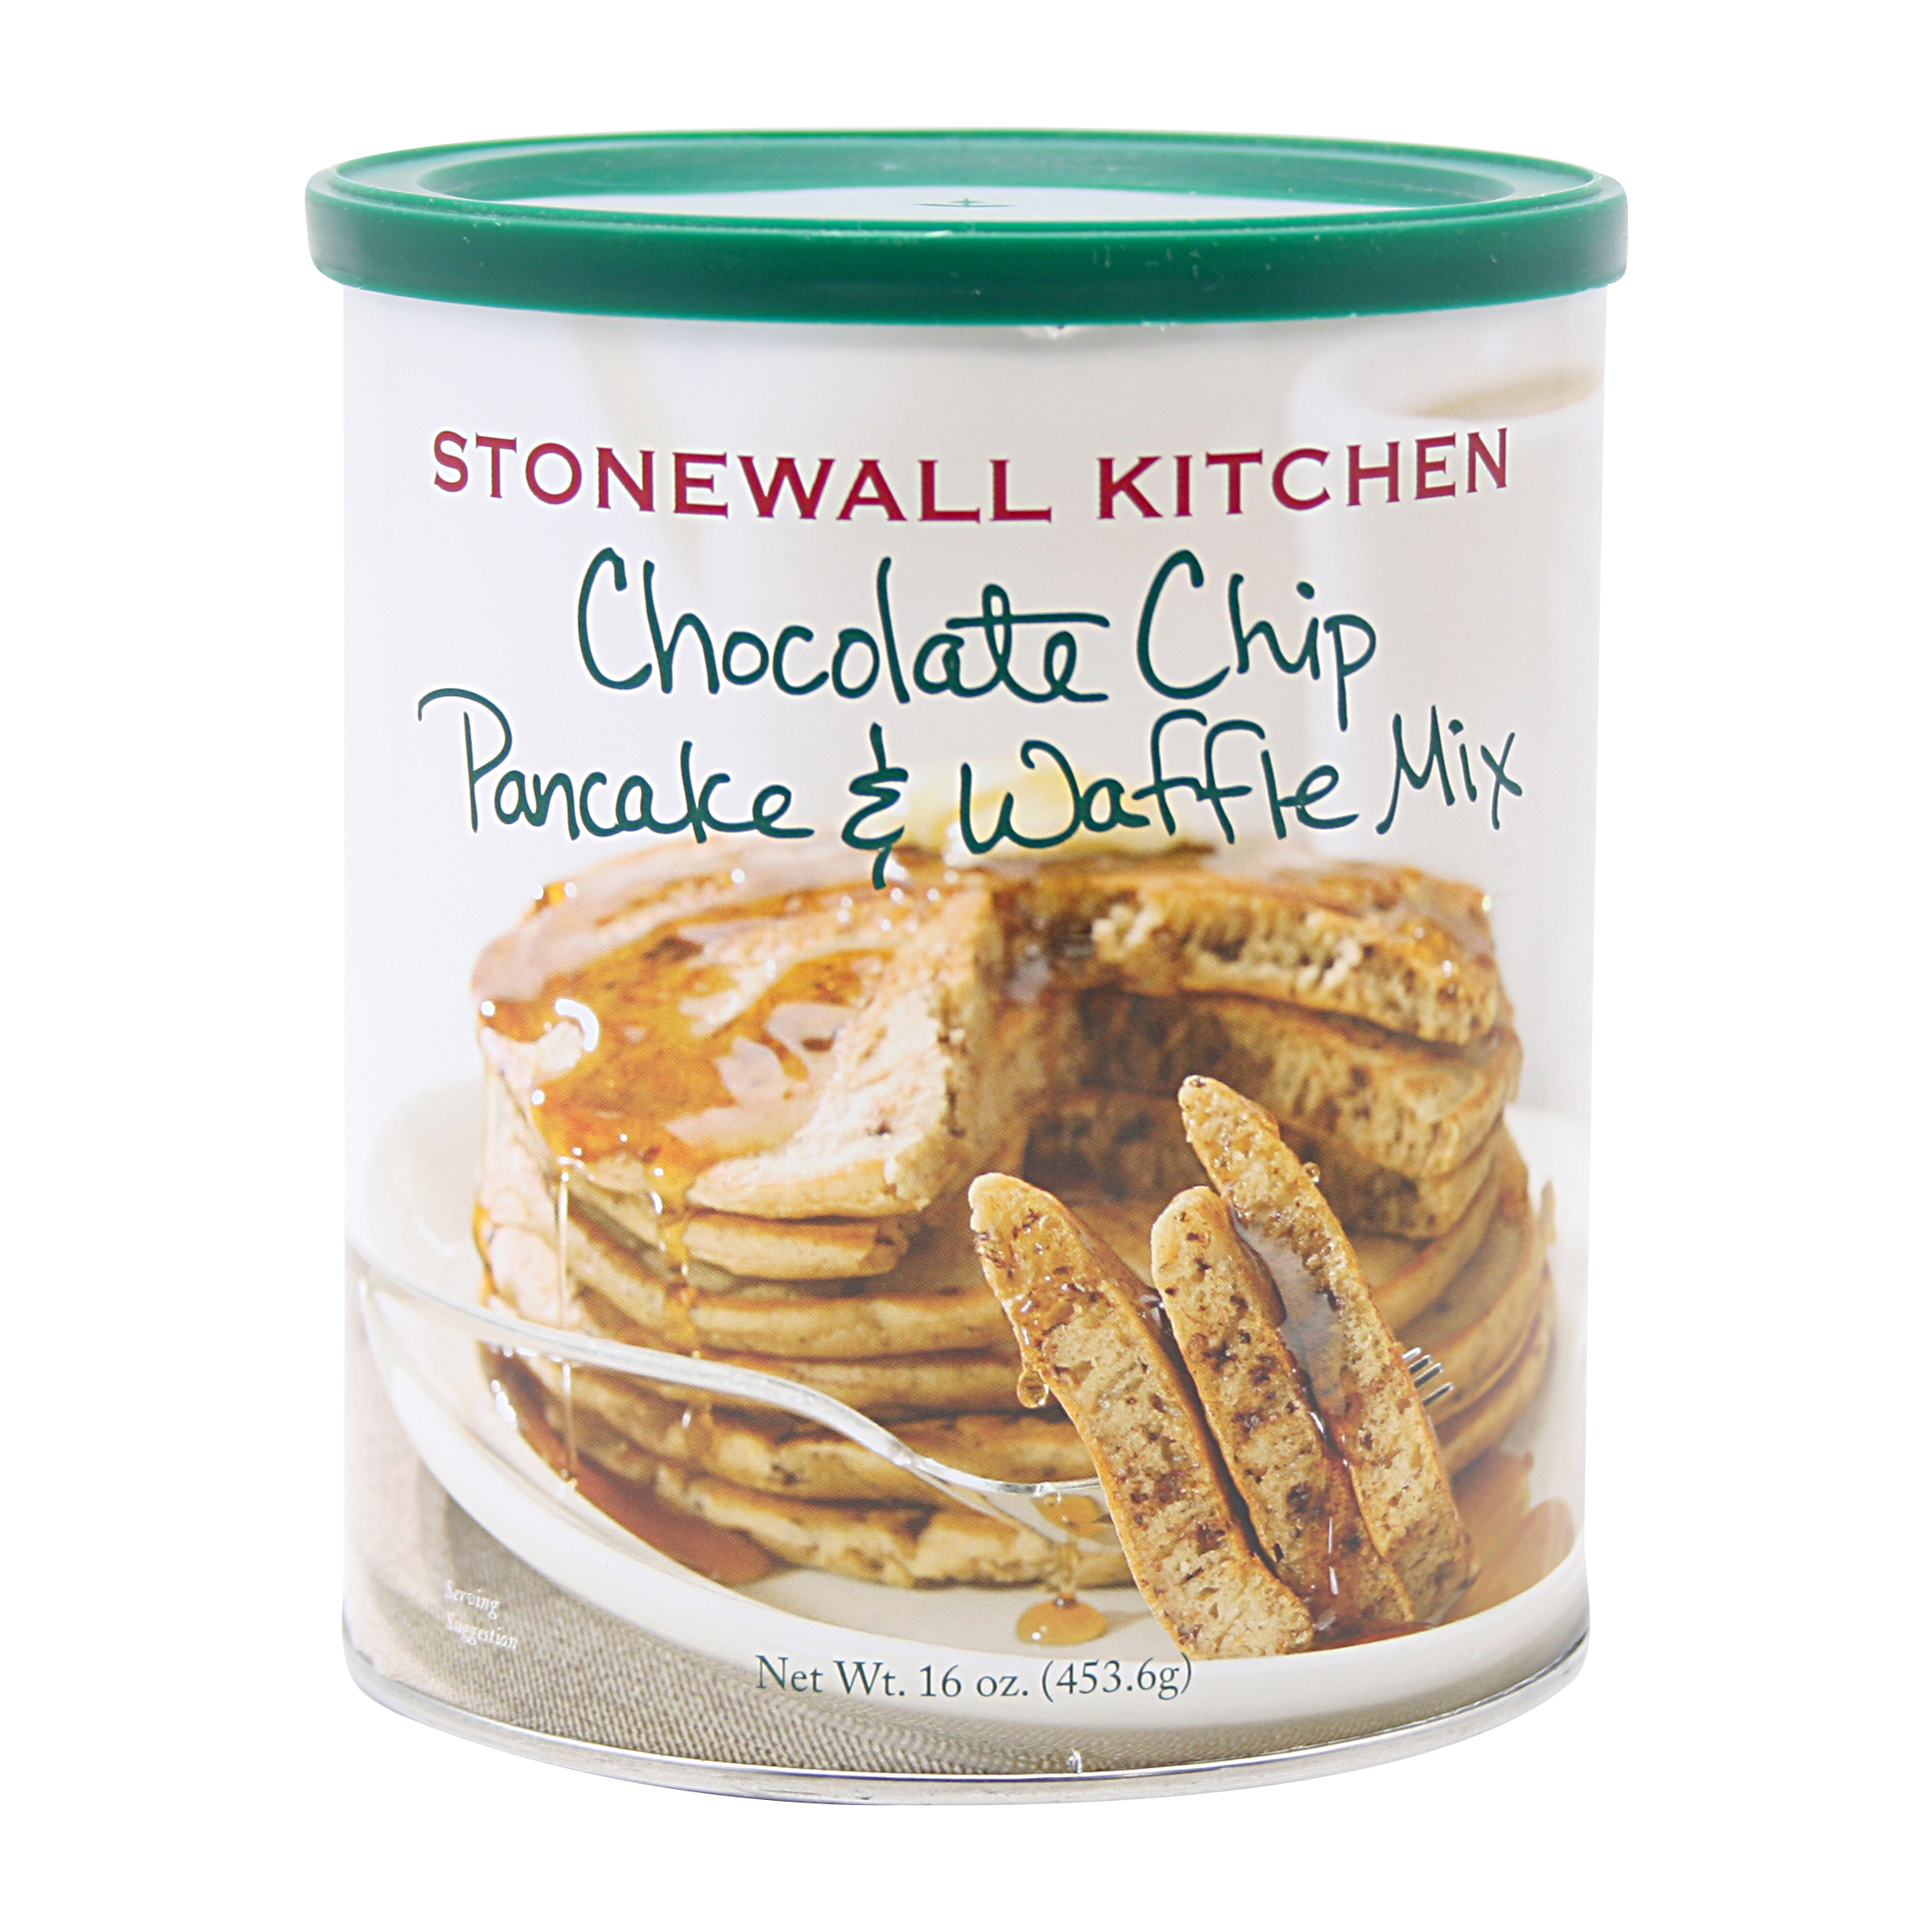 Stonewall Kitchen Chocolate Chip Pancake Waffle Mix